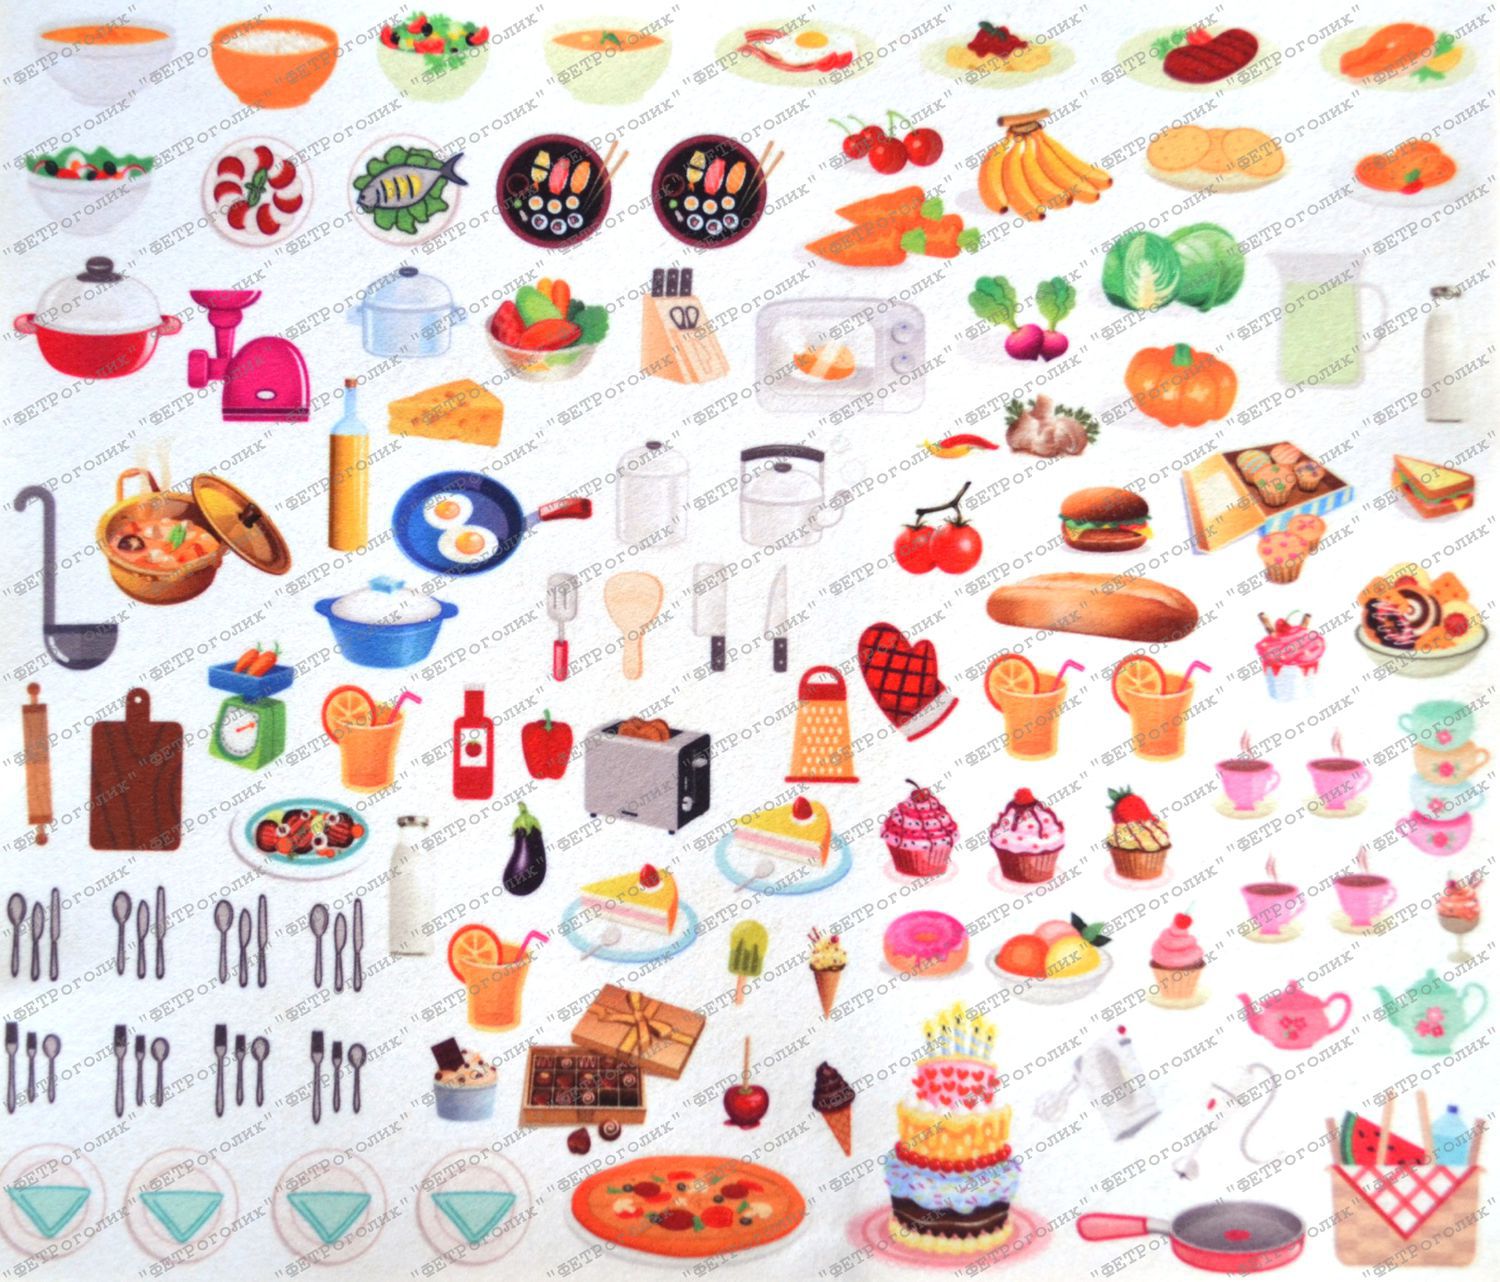 Бумажная еда картинки. Бумажная еда. Мини бумажная еда. Предметы для бумажной кухни. Маленькие рисунки еда.